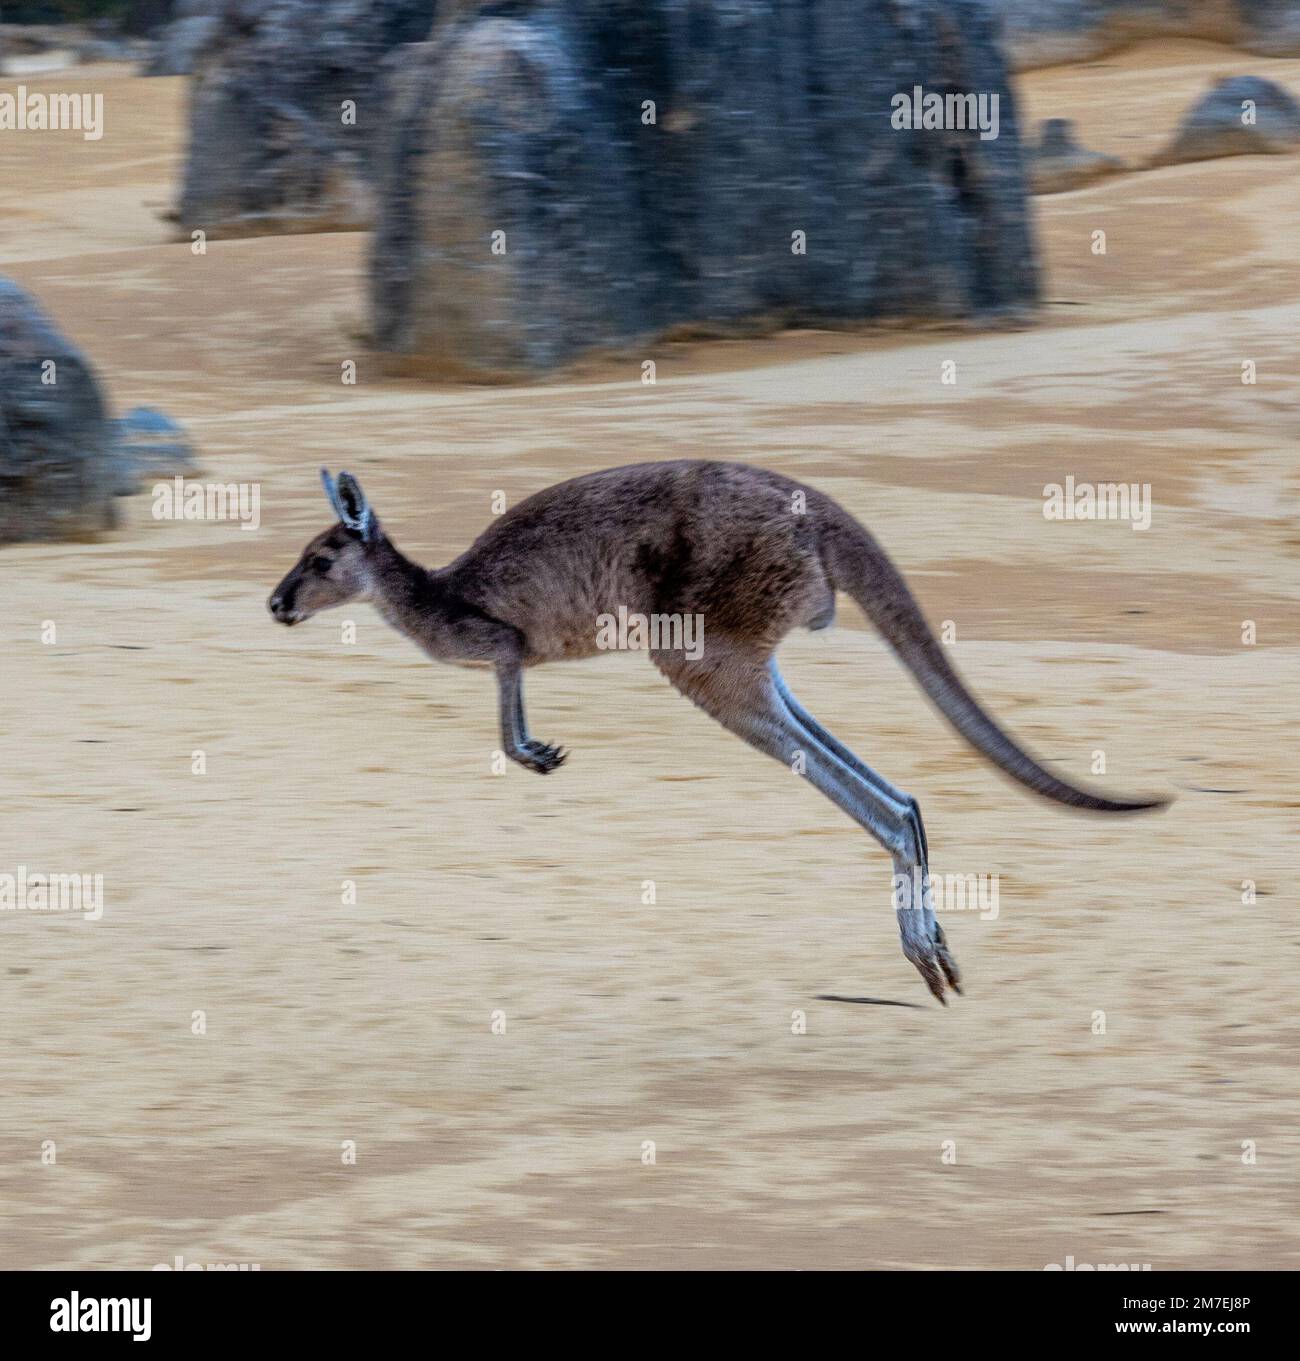 Kangaroo hopping in desert Stock Photo